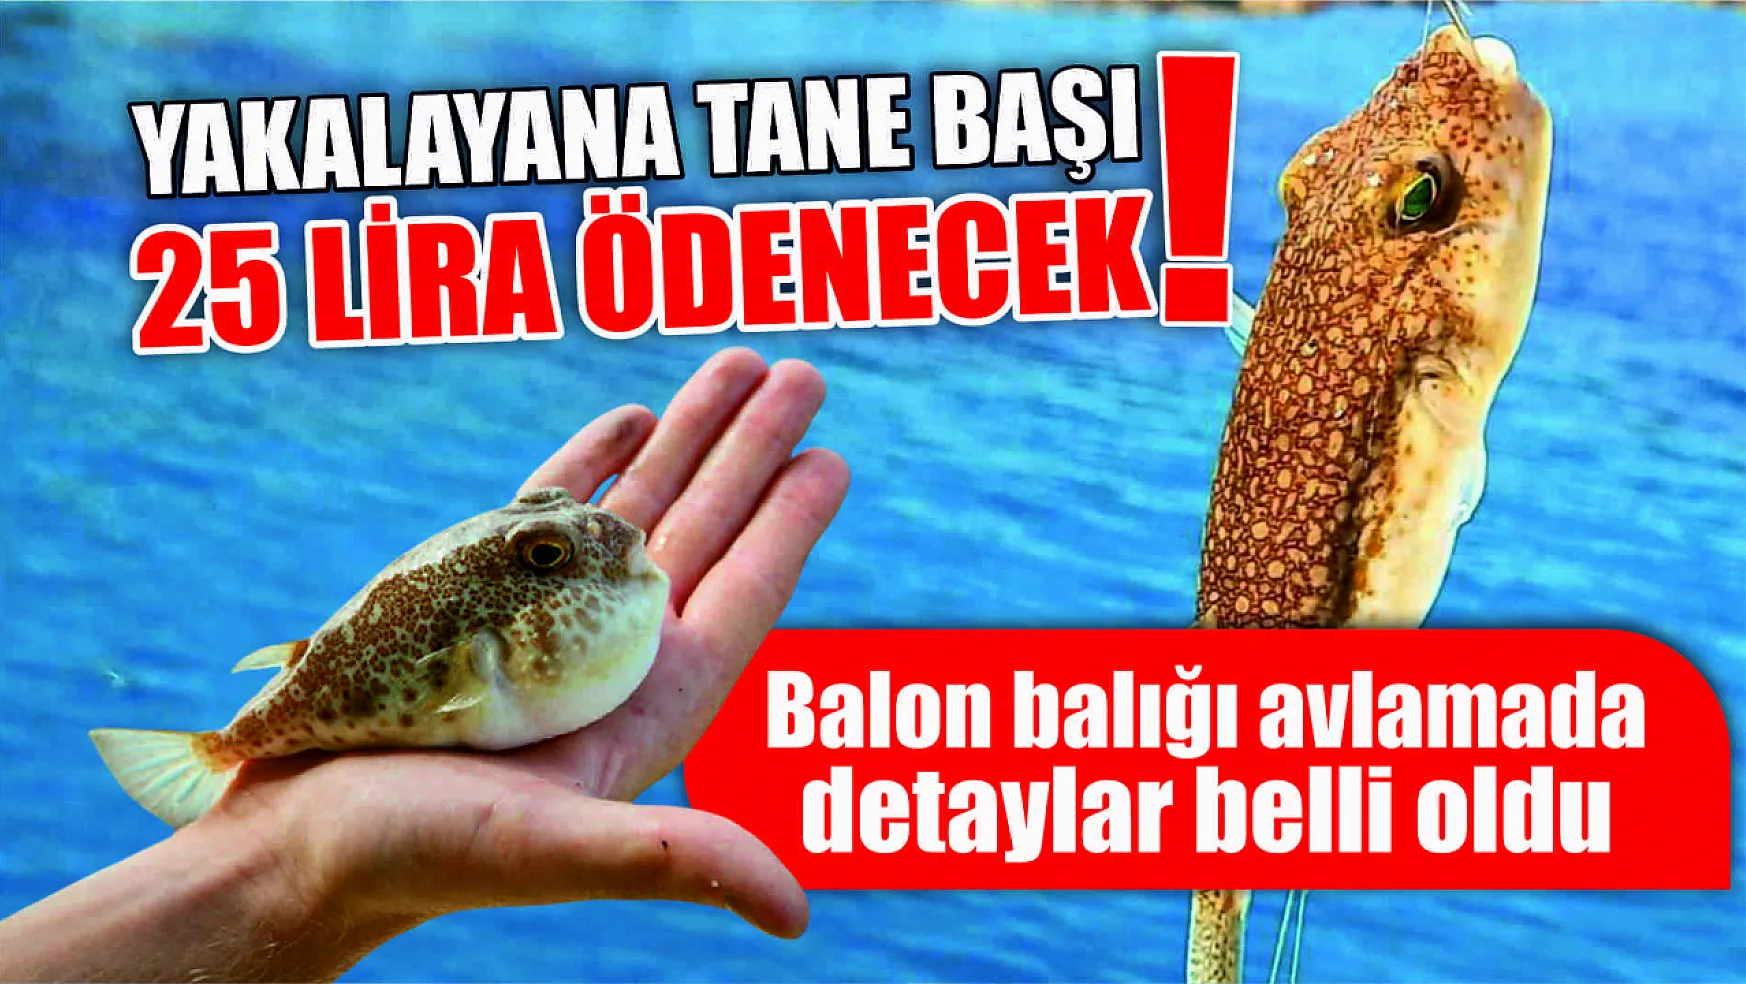 Balon balığı avlamada detaylar belli oldu Yakalayana tane başı 25 lira ödenecek!